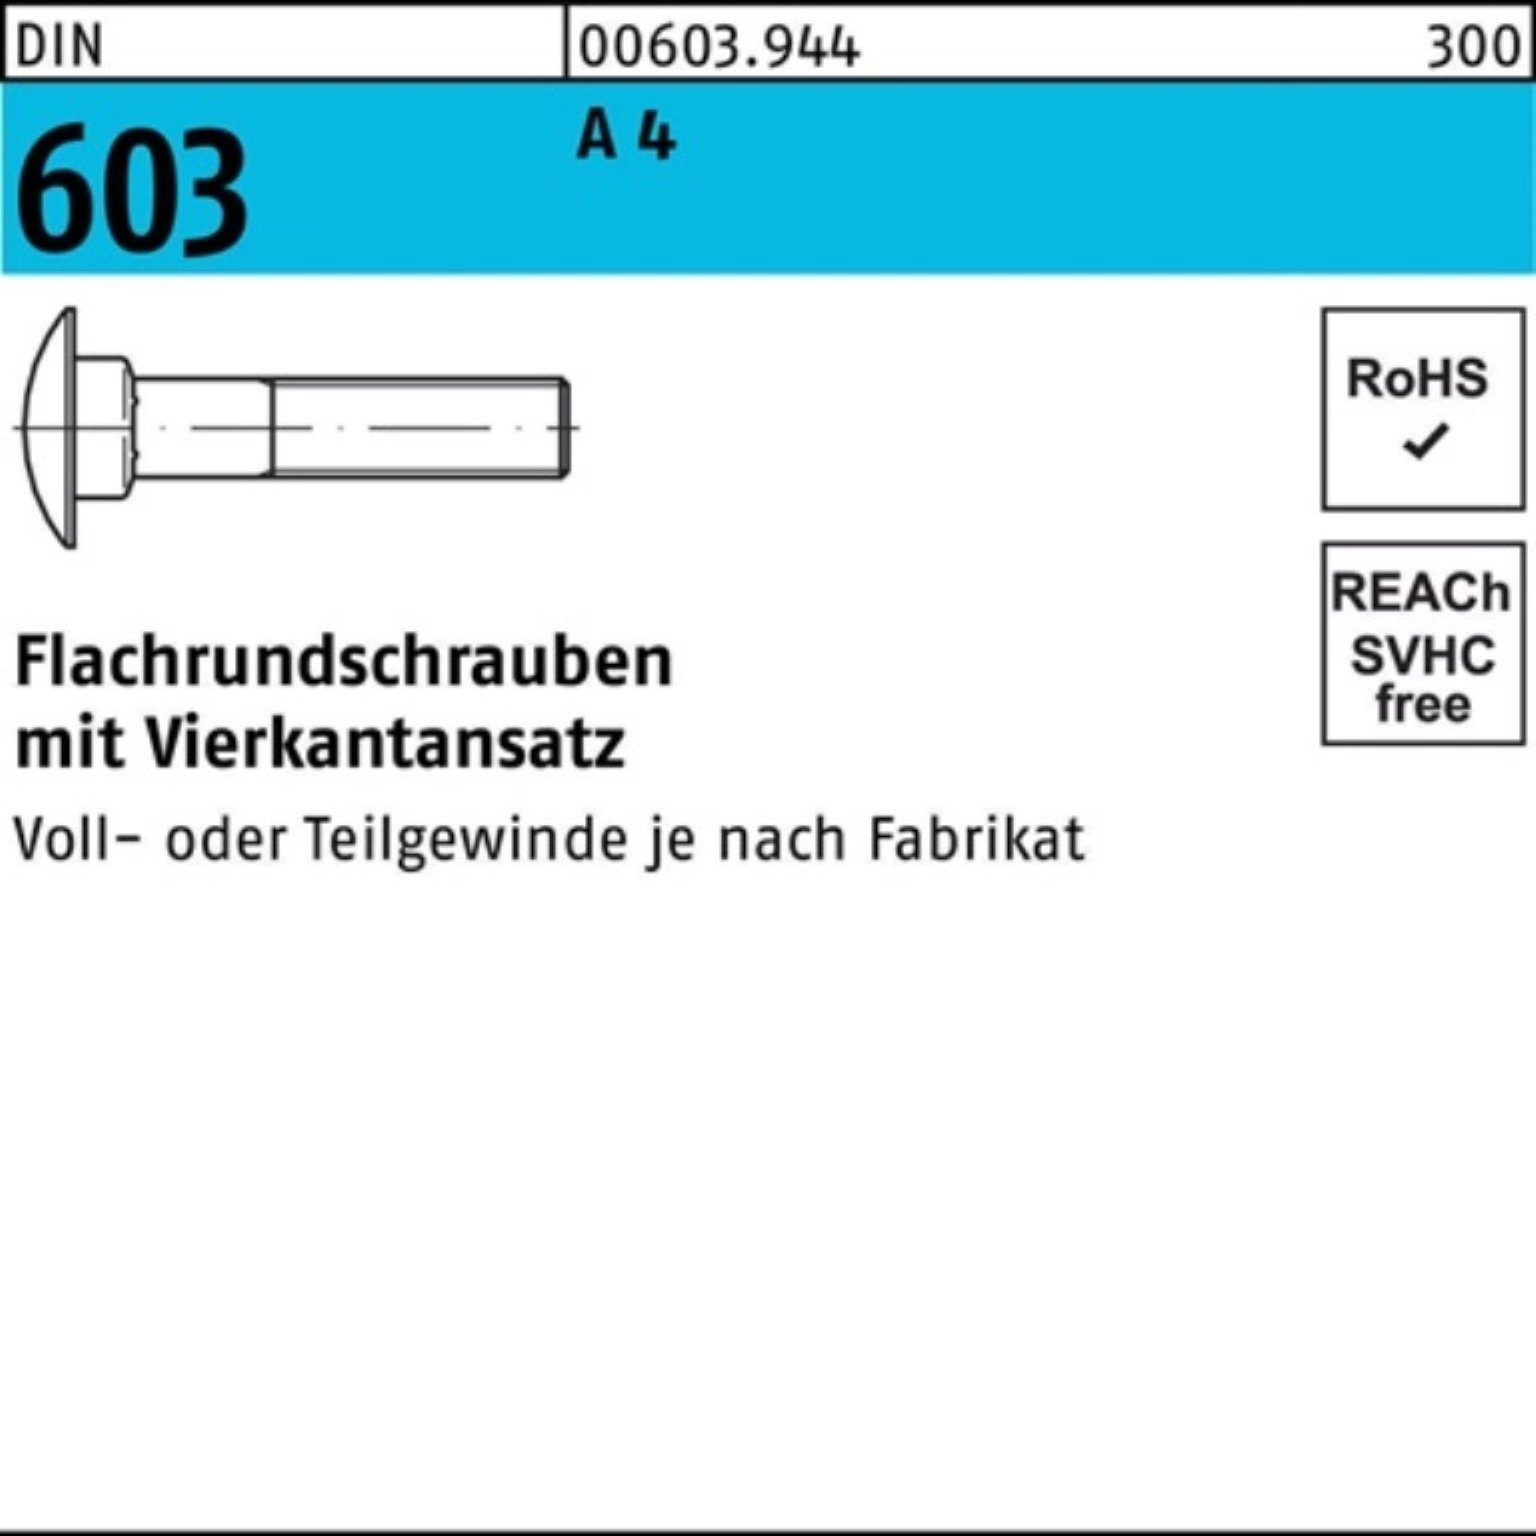 Stü A Reyher 603 Flachrundschraube 35 Vierkantansatz Schraube 100er M8x 4 DIN Pack 25